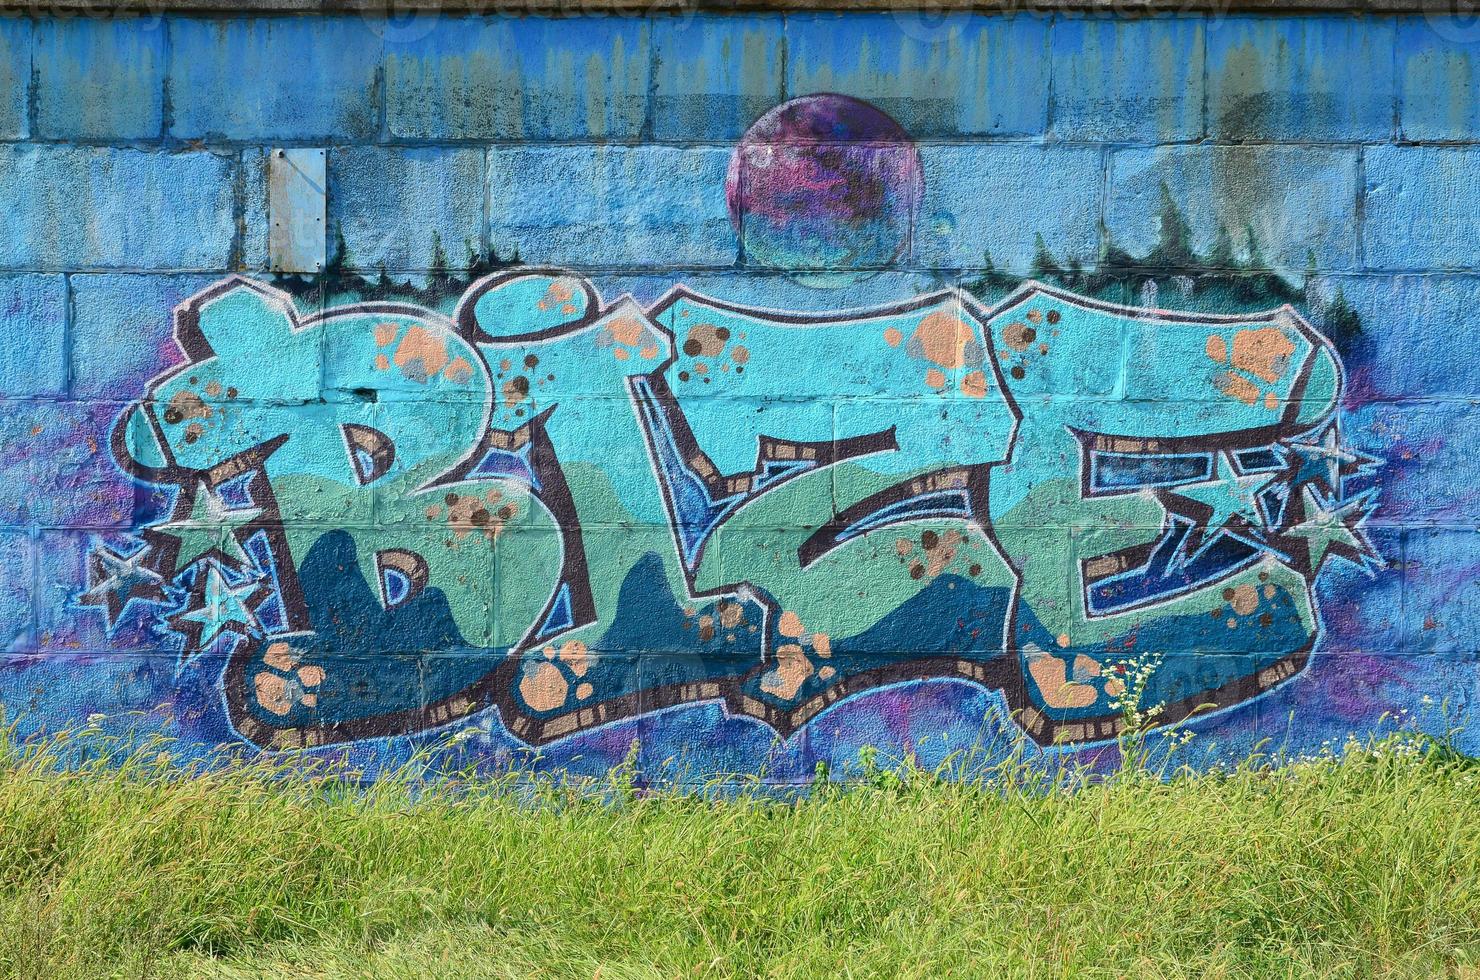 Fragment von Graffiti-Zeichnungen. Die alte Wand ist mit Farbflecken im Stil der Straßenkunstkultur dekoriert. farbige Hintergrundtextur in kalten Tönen foto